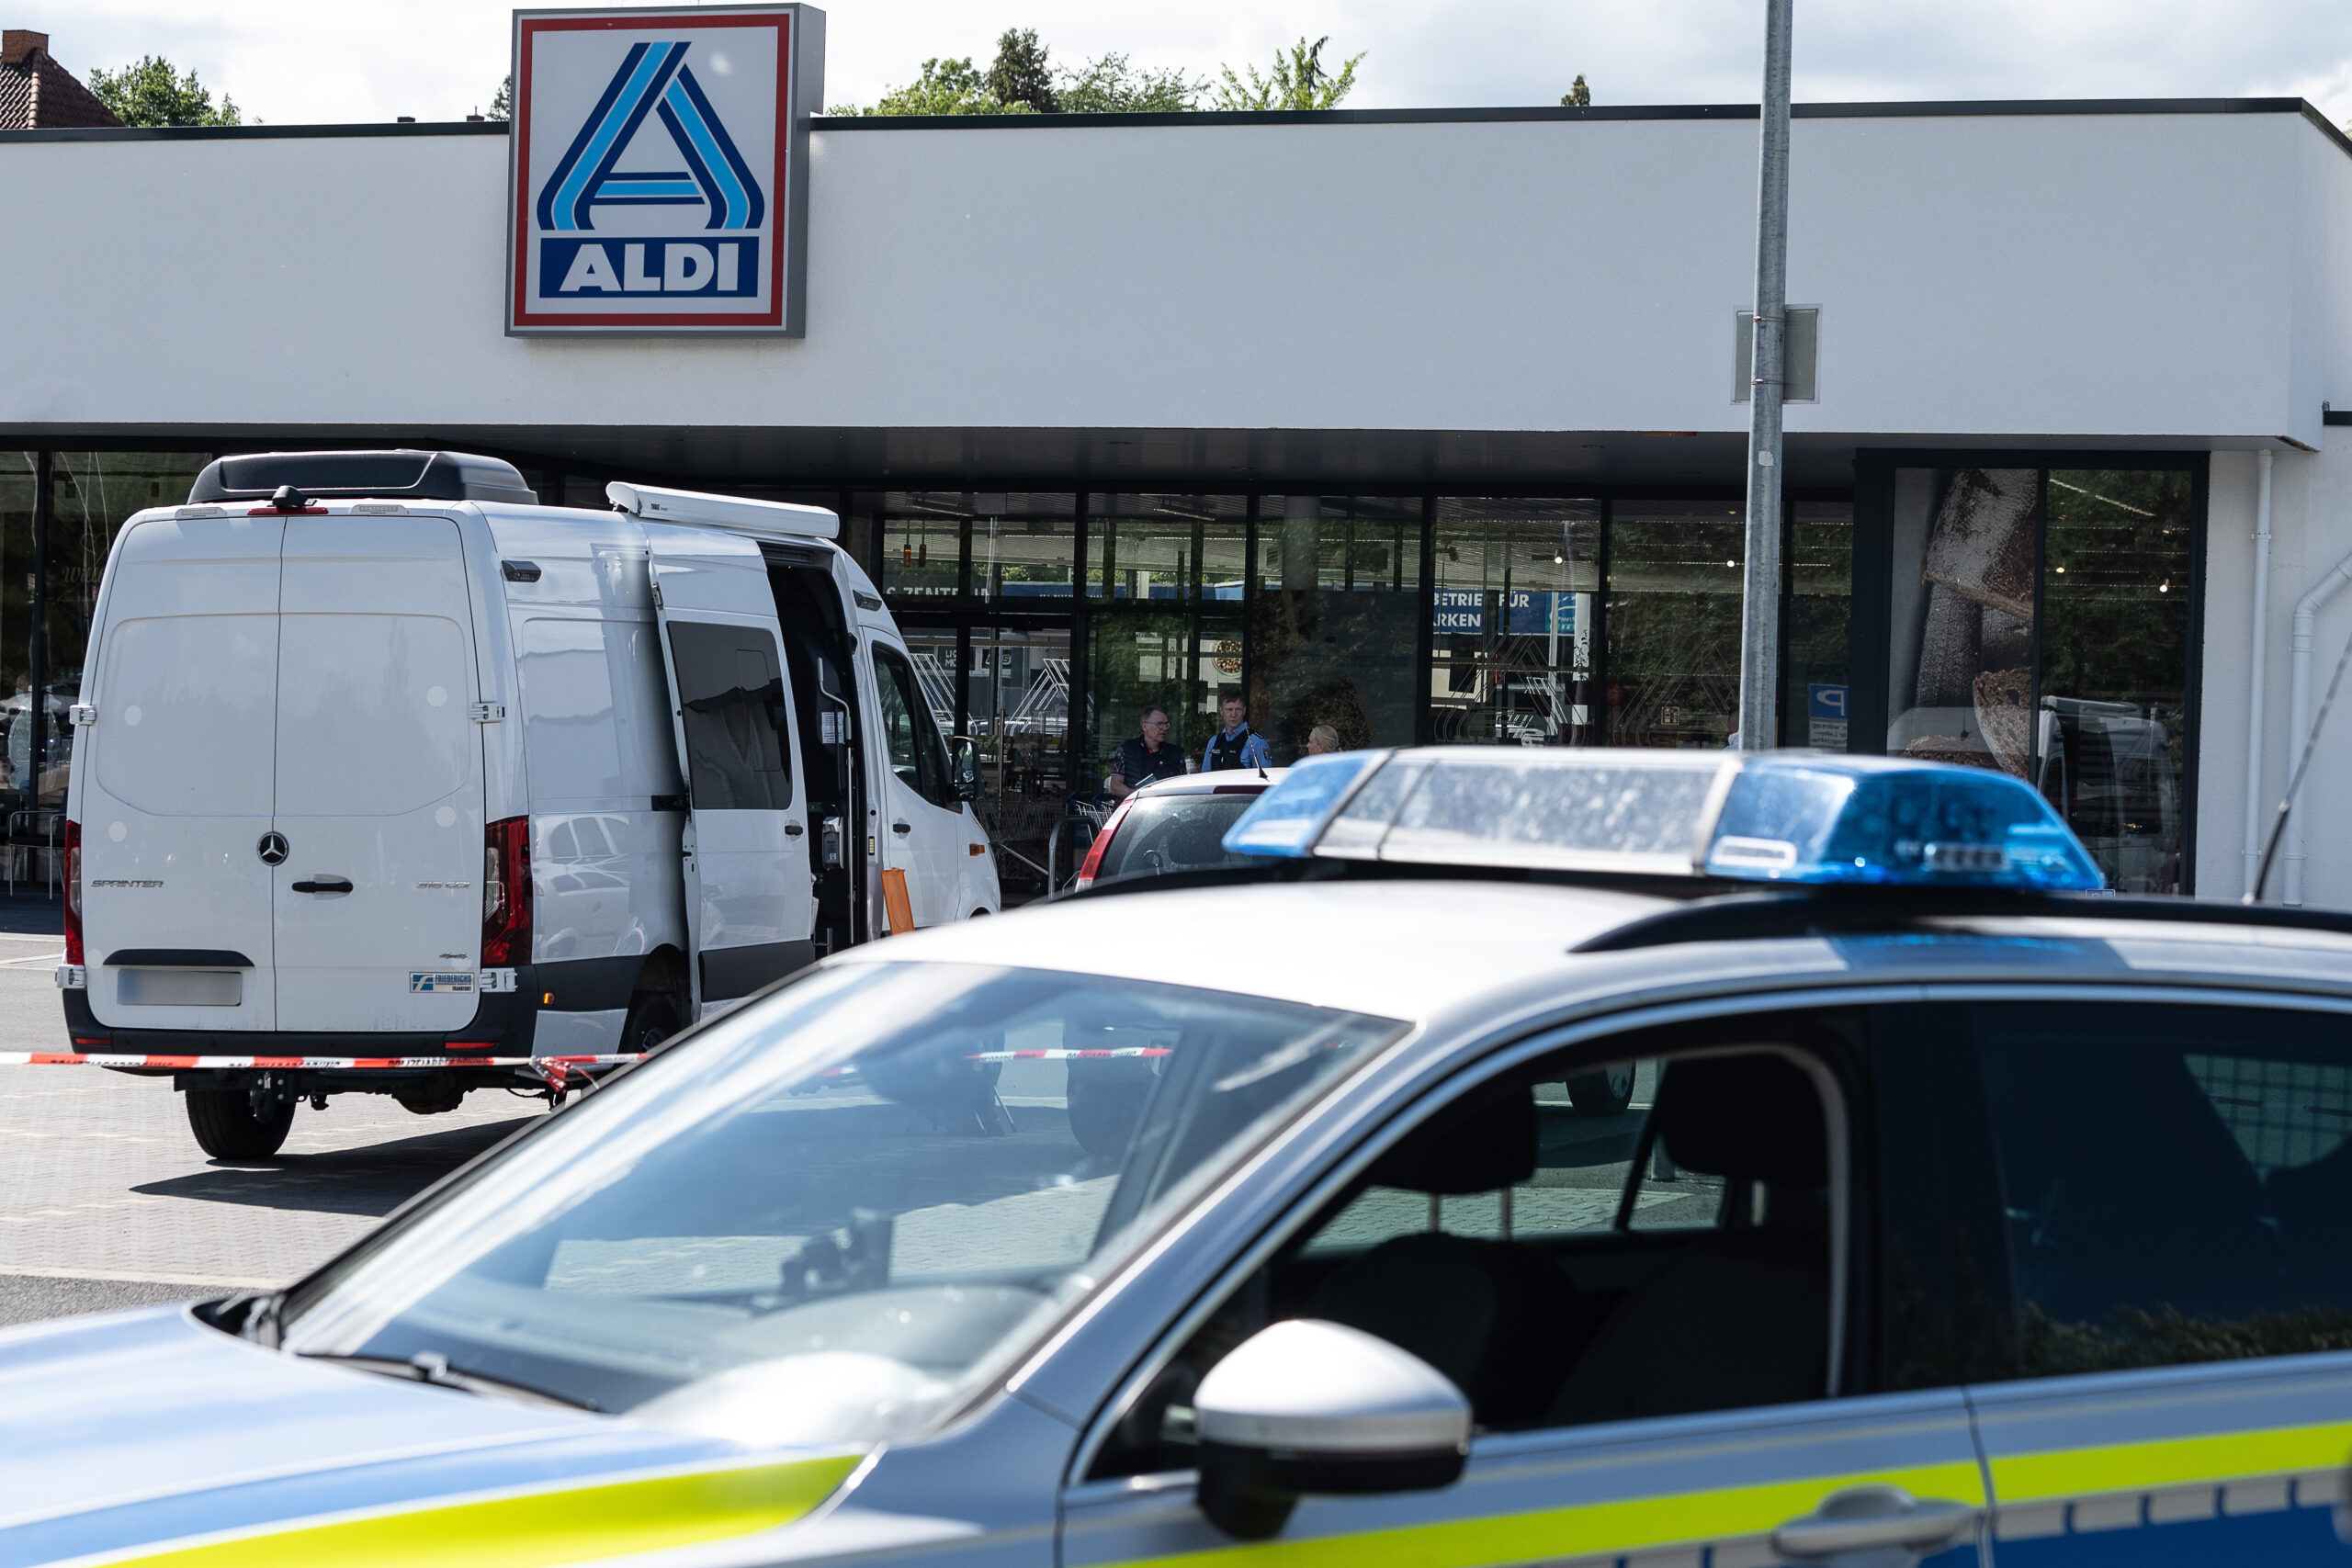 Auf einem Aldi-Parkplatz in Eckernförde wurde ein 17-Jähriger tot aufgefunden. (Symbolbild)